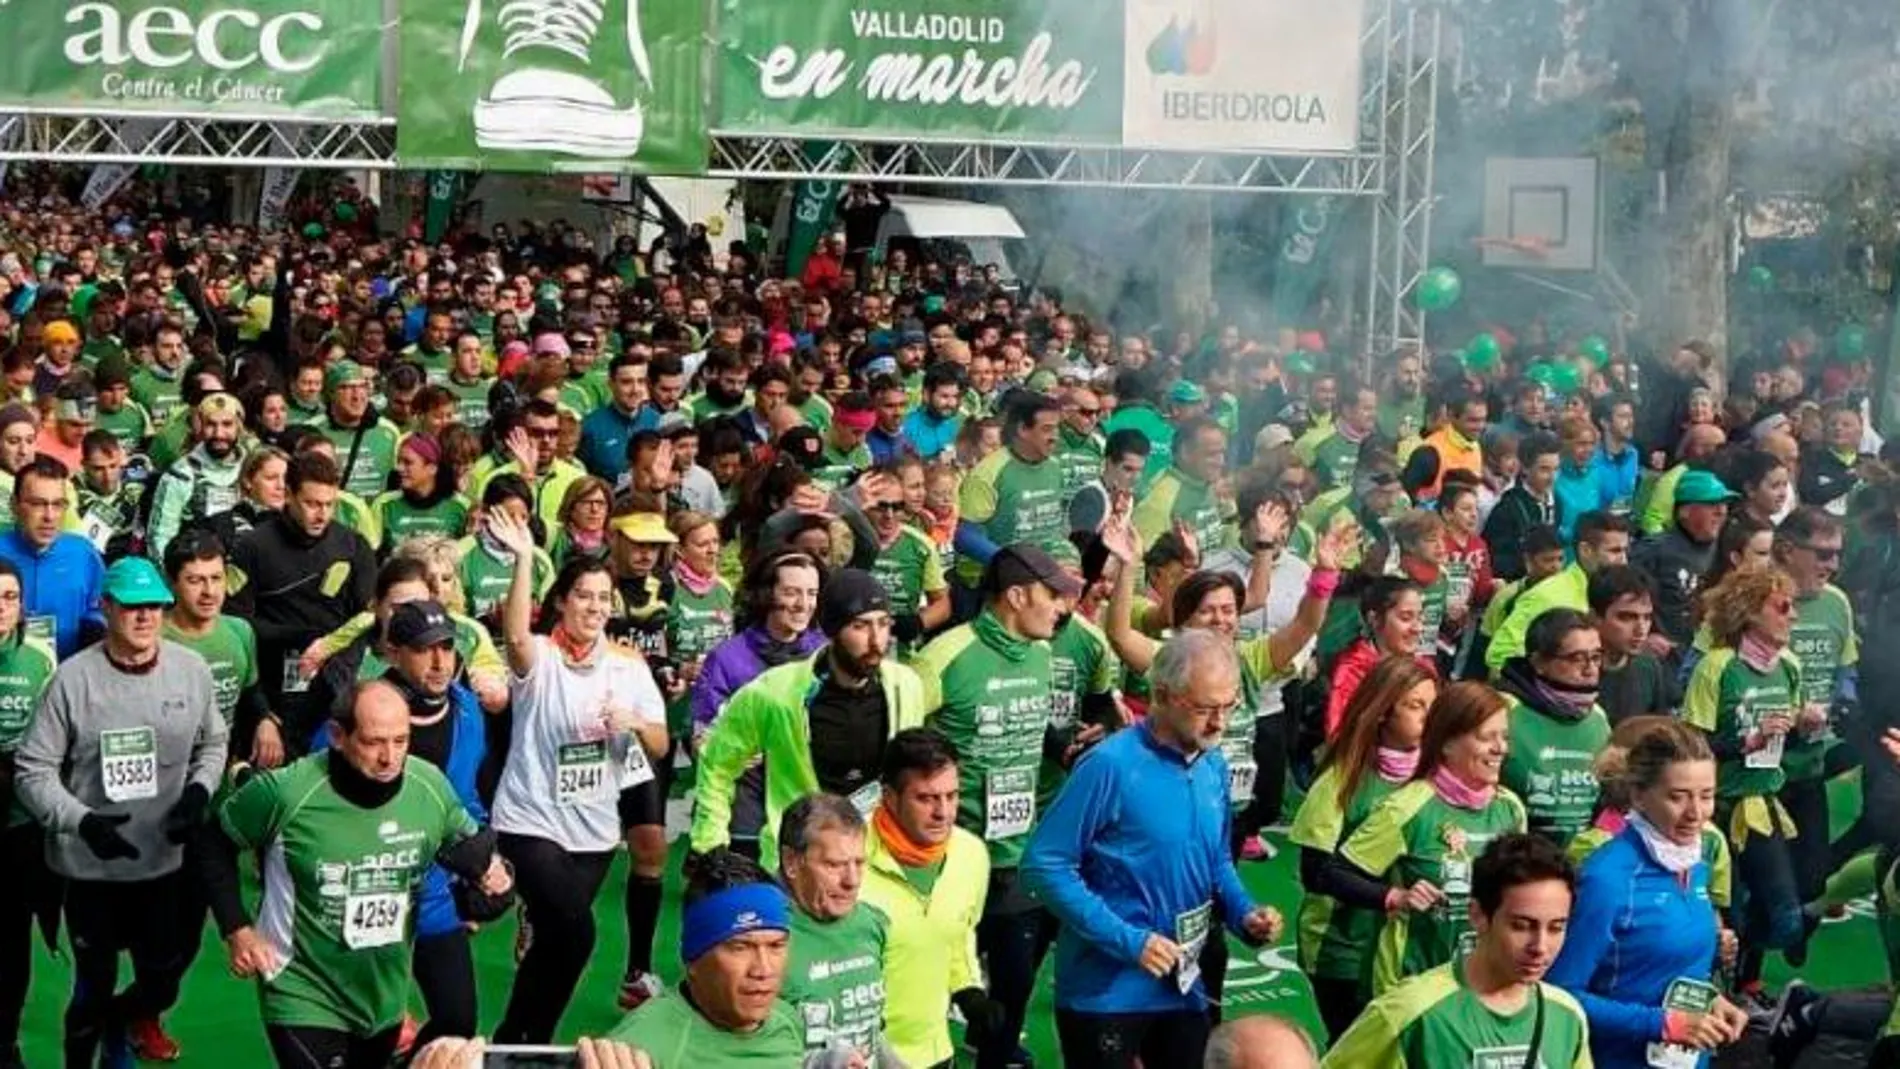 Pistoletazo de salida de la VII Marcha «Valladolid contra el cáncer», la más numerosa de España al batir su propio récord de 45.000 inscritos alcanzado el pasado año